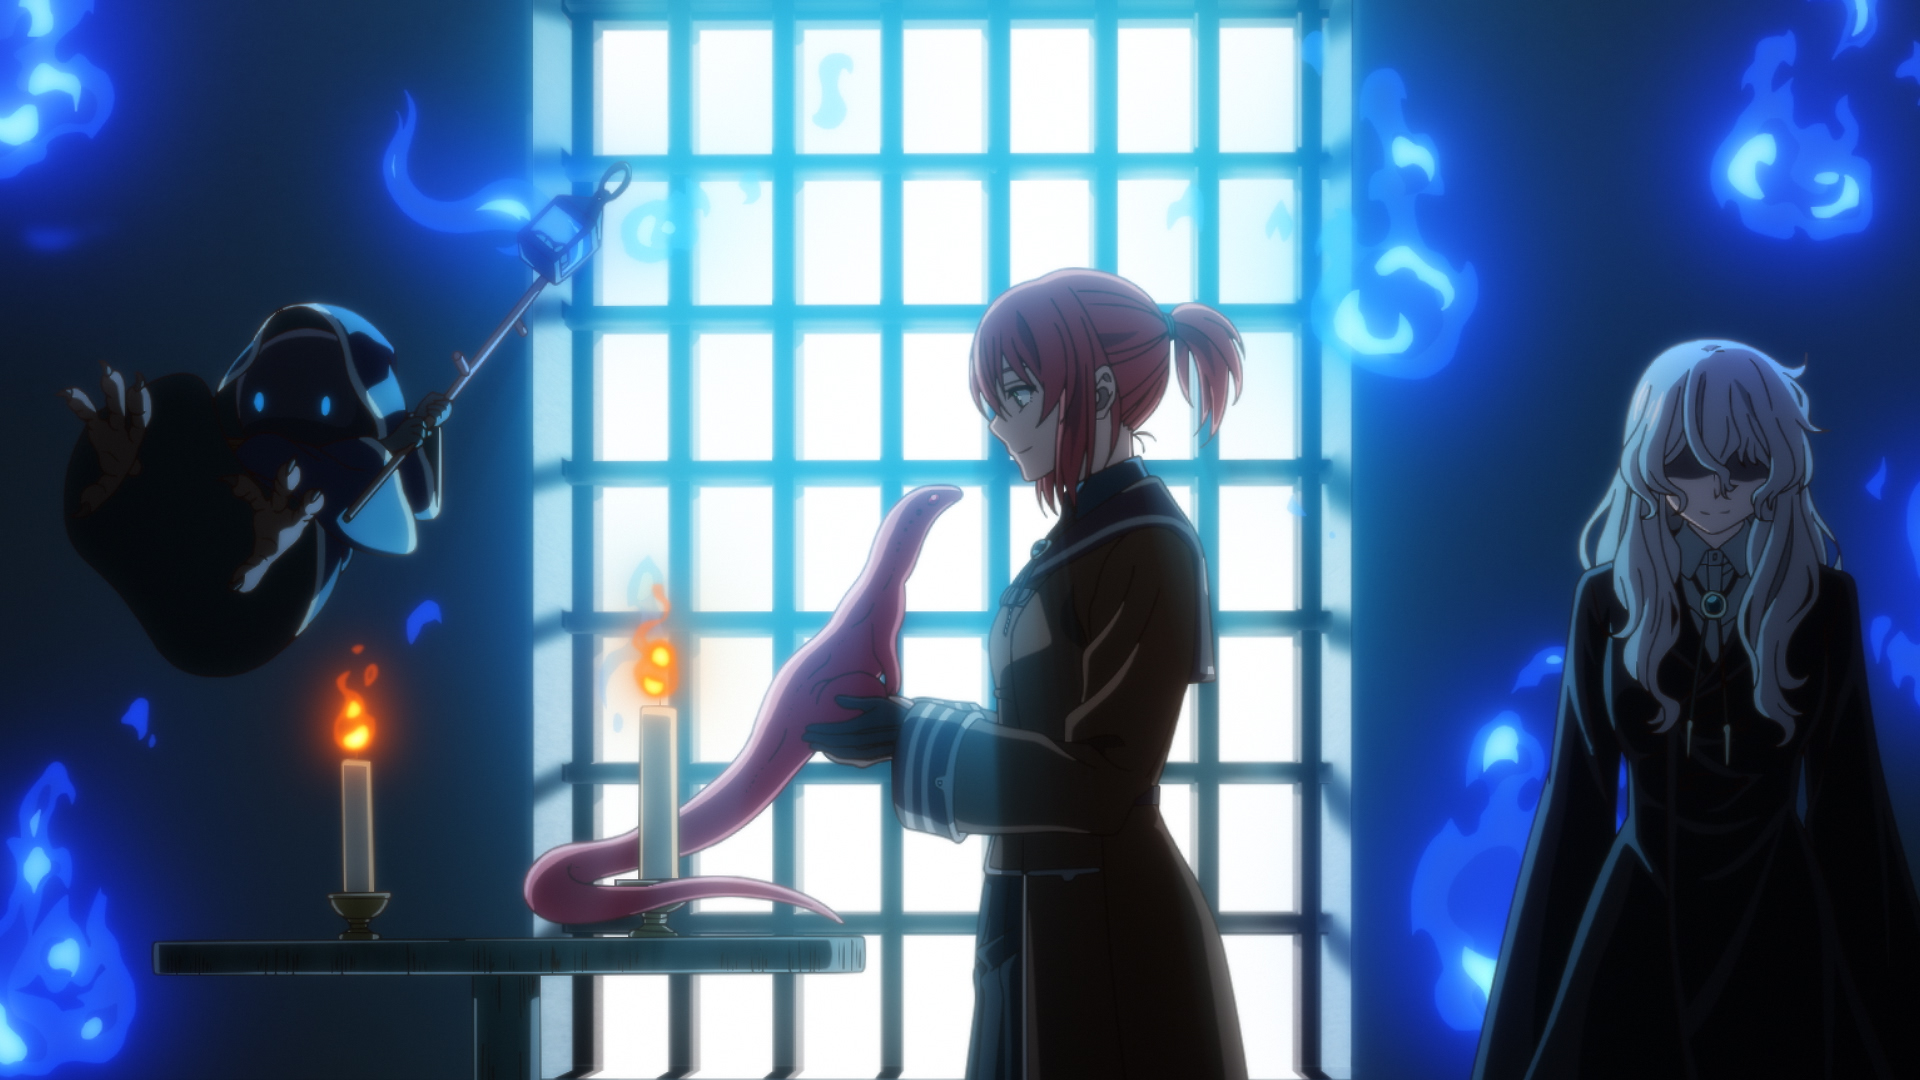 Mirai Nikki OVA Trailer Arrives, Full of Crazy